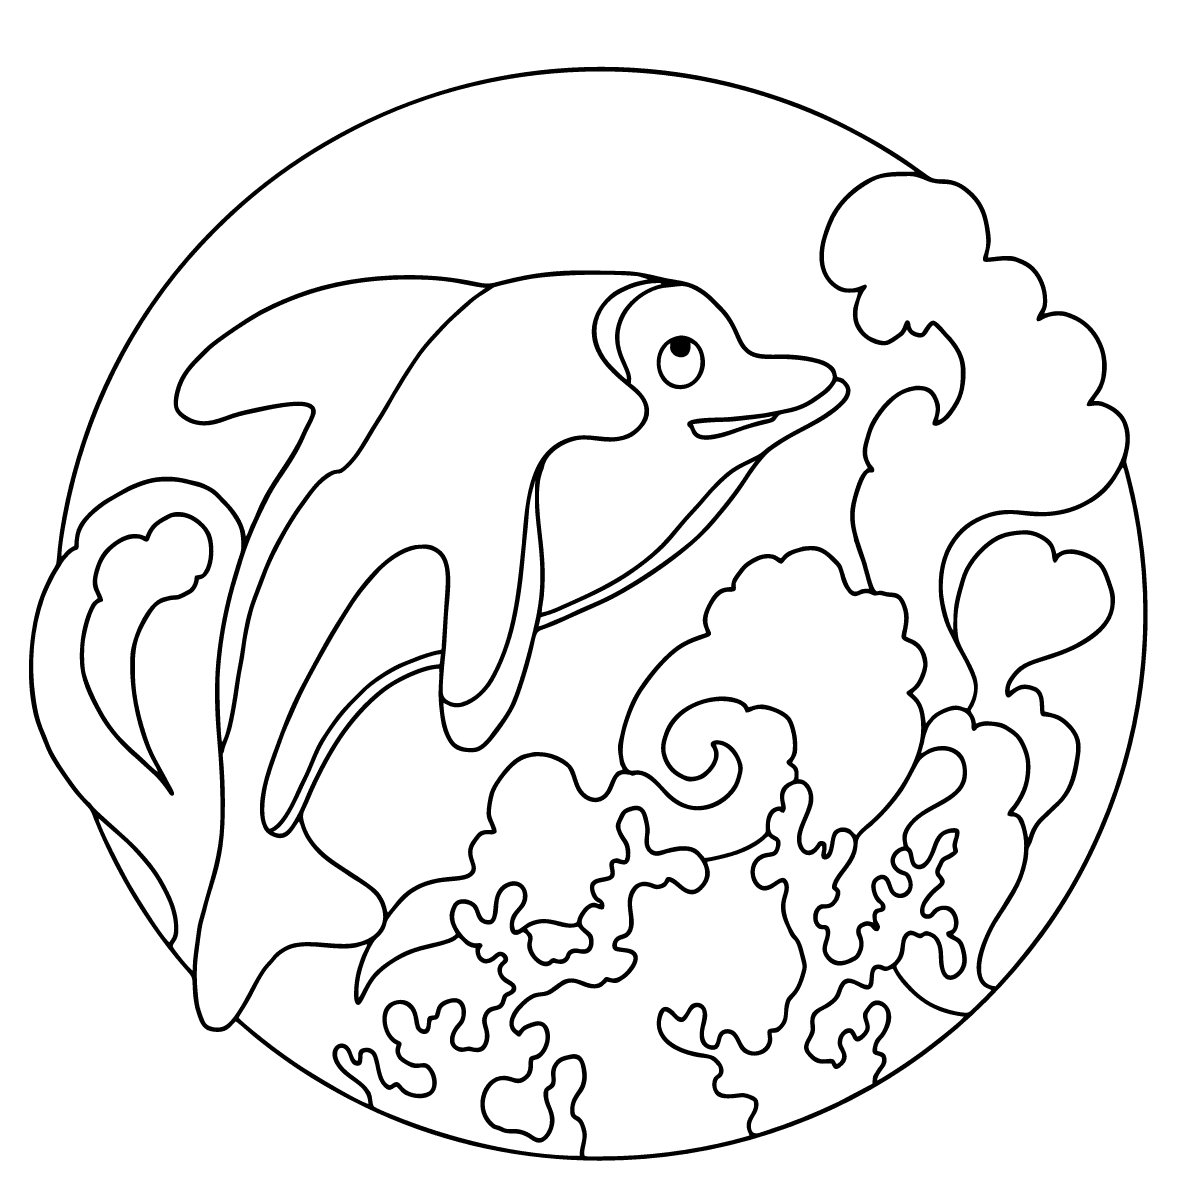 Дельфин раскраска для детей 3-4 лет